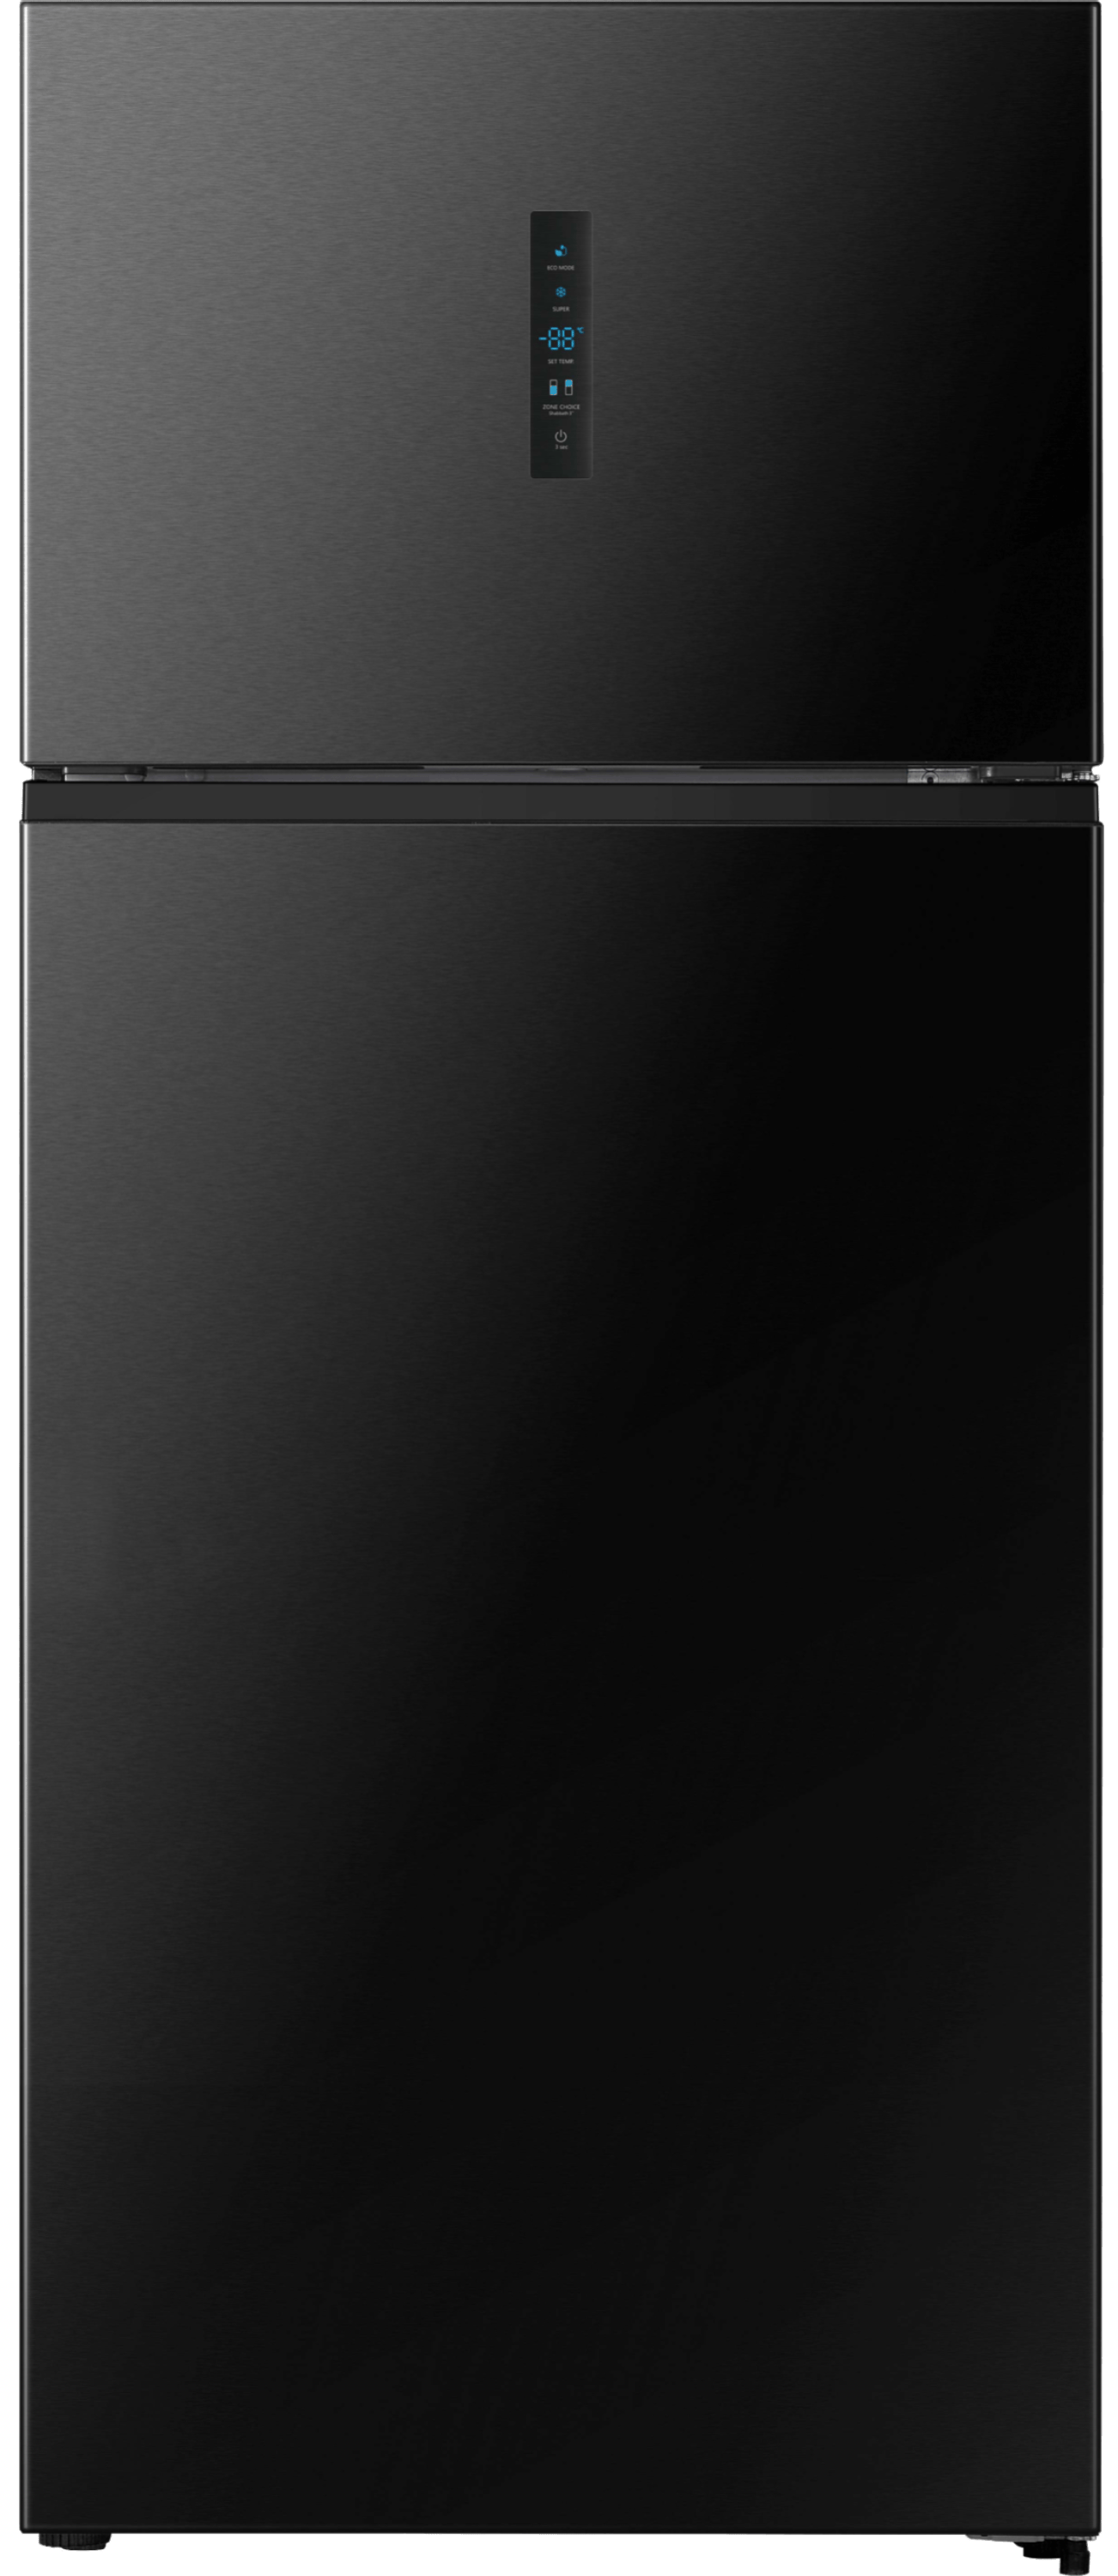 מקרר מקפיא עליון Hisense RD75BK - גימור נירוסטה מושחרת שנה אחריות ע"י היבואן הרשמי